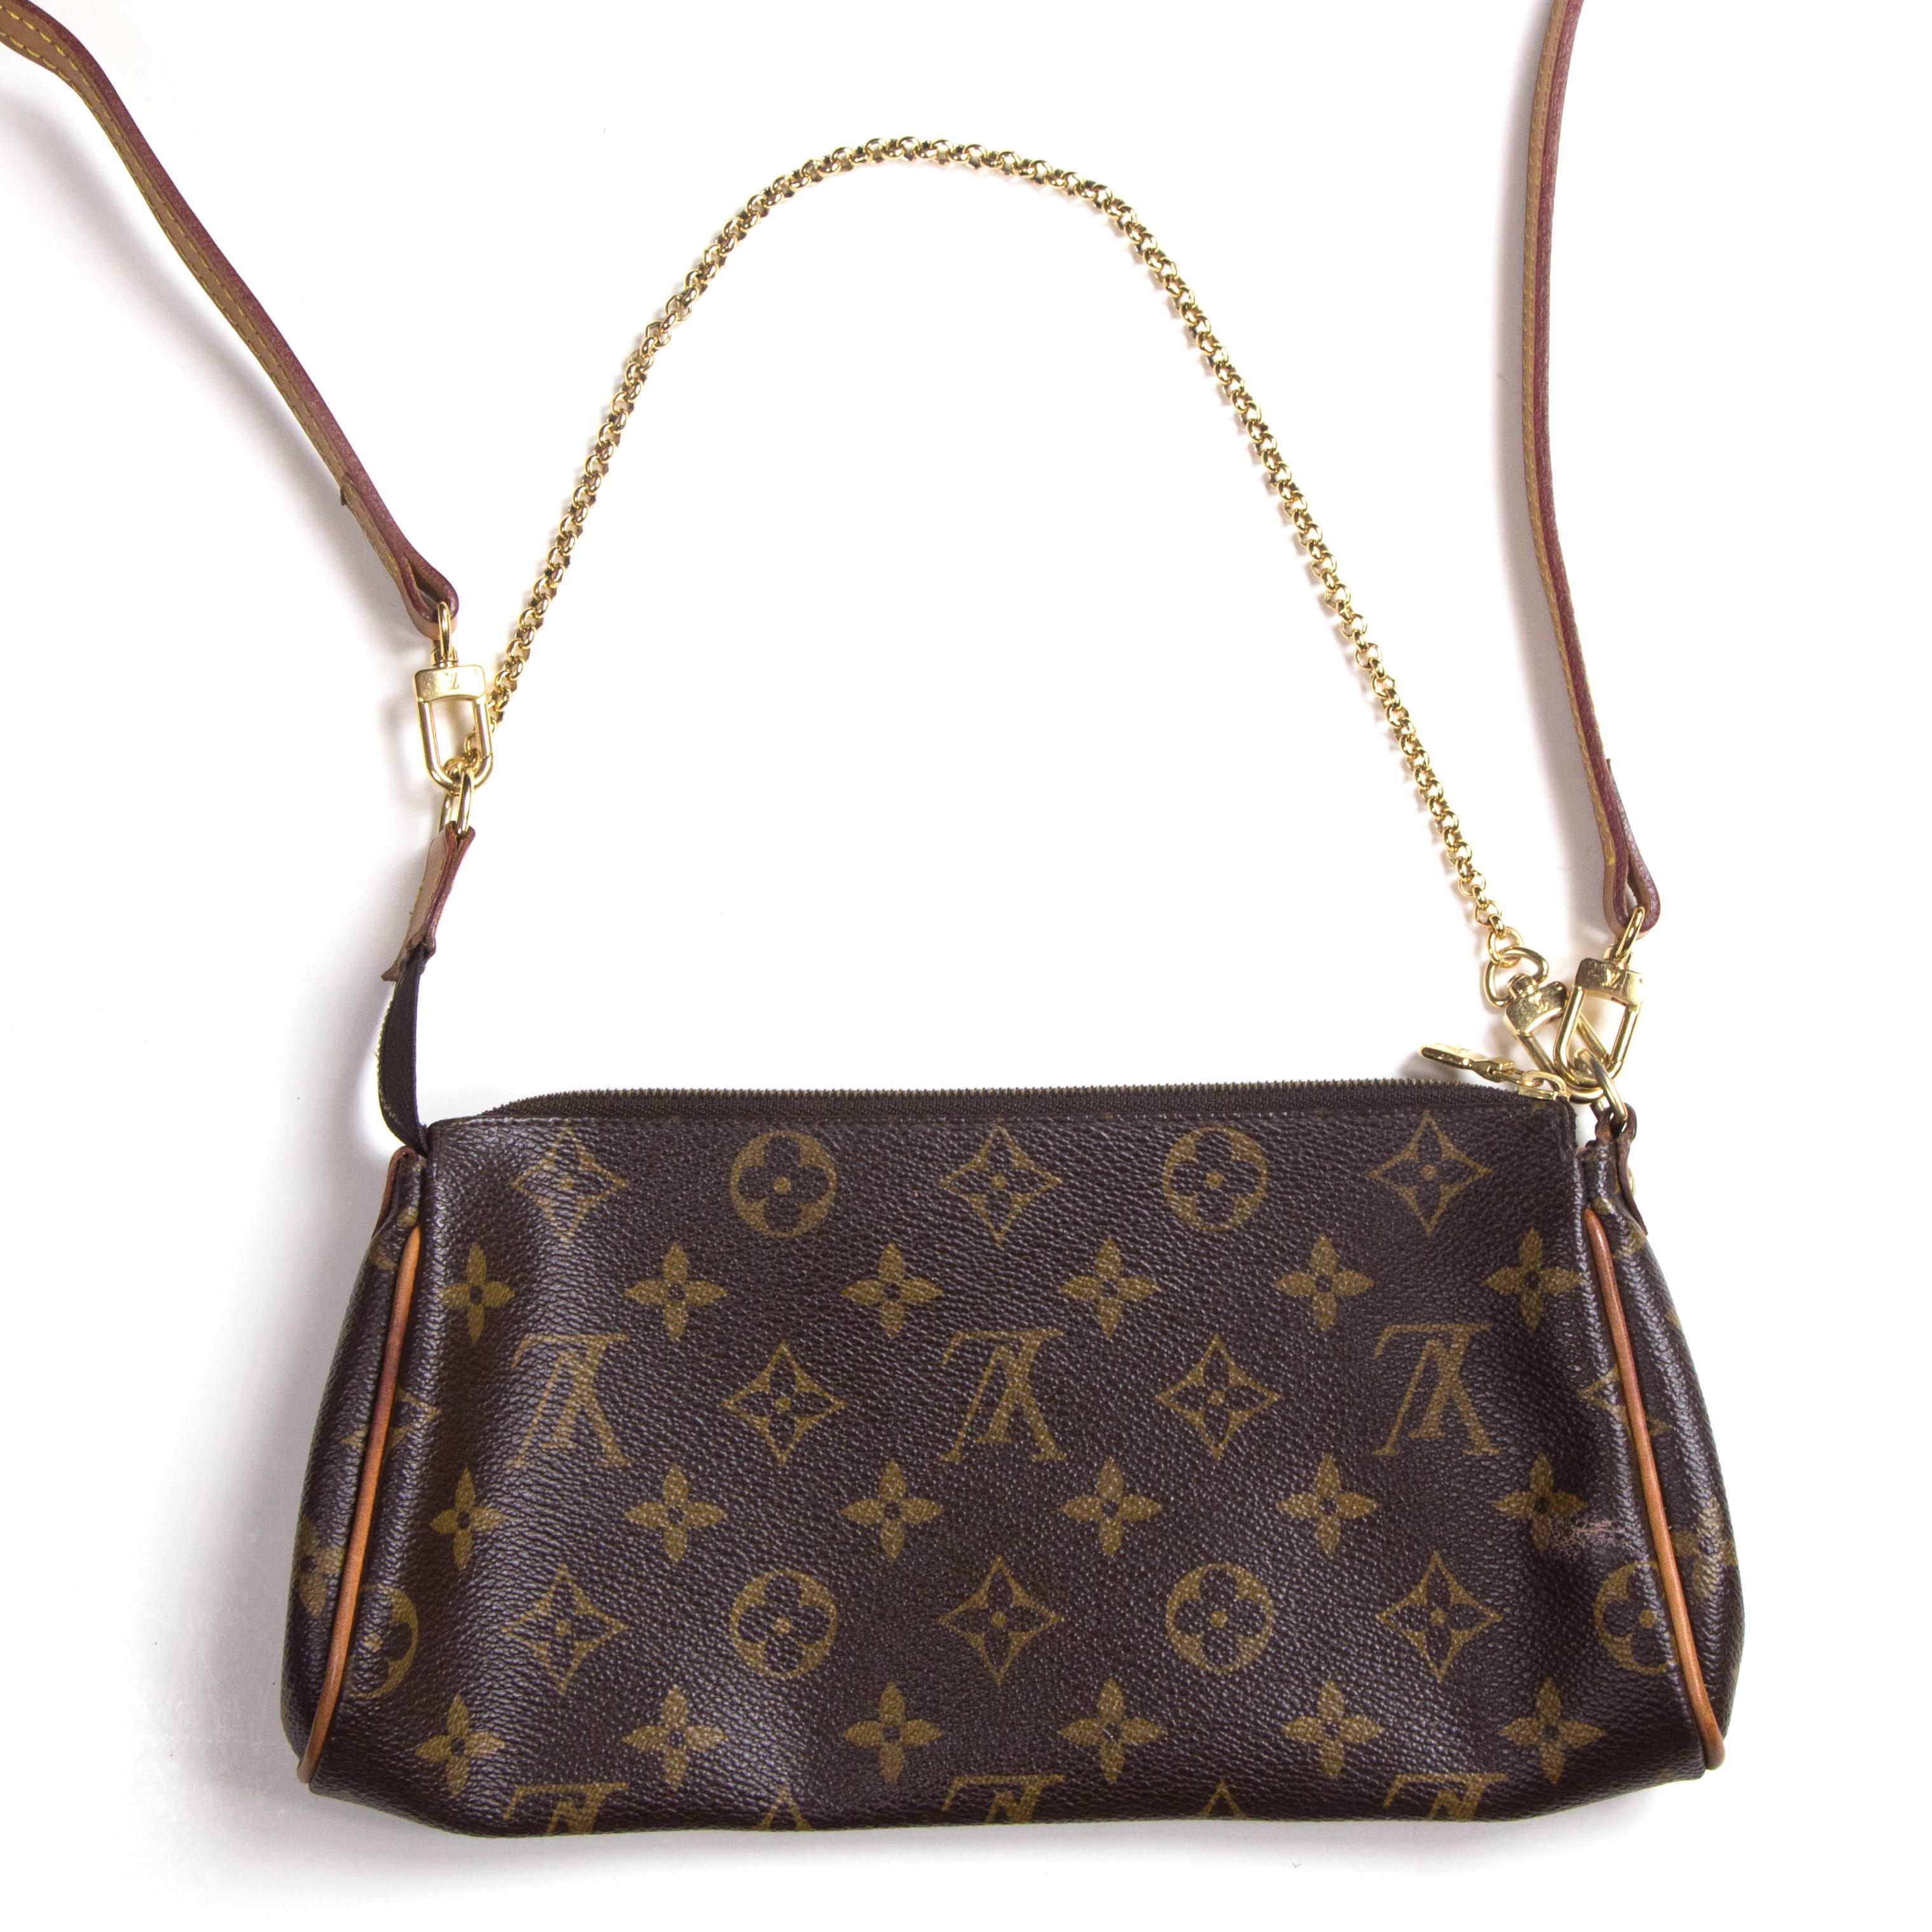 Louis Vuitton - Eva Pochete Shoulder Bag

Color: Brown / Tan

------------------------------------------------------------

Details:

- detachable shoulder strap

- short chain strap

- gold tone hardware

- zip top closure

- LV